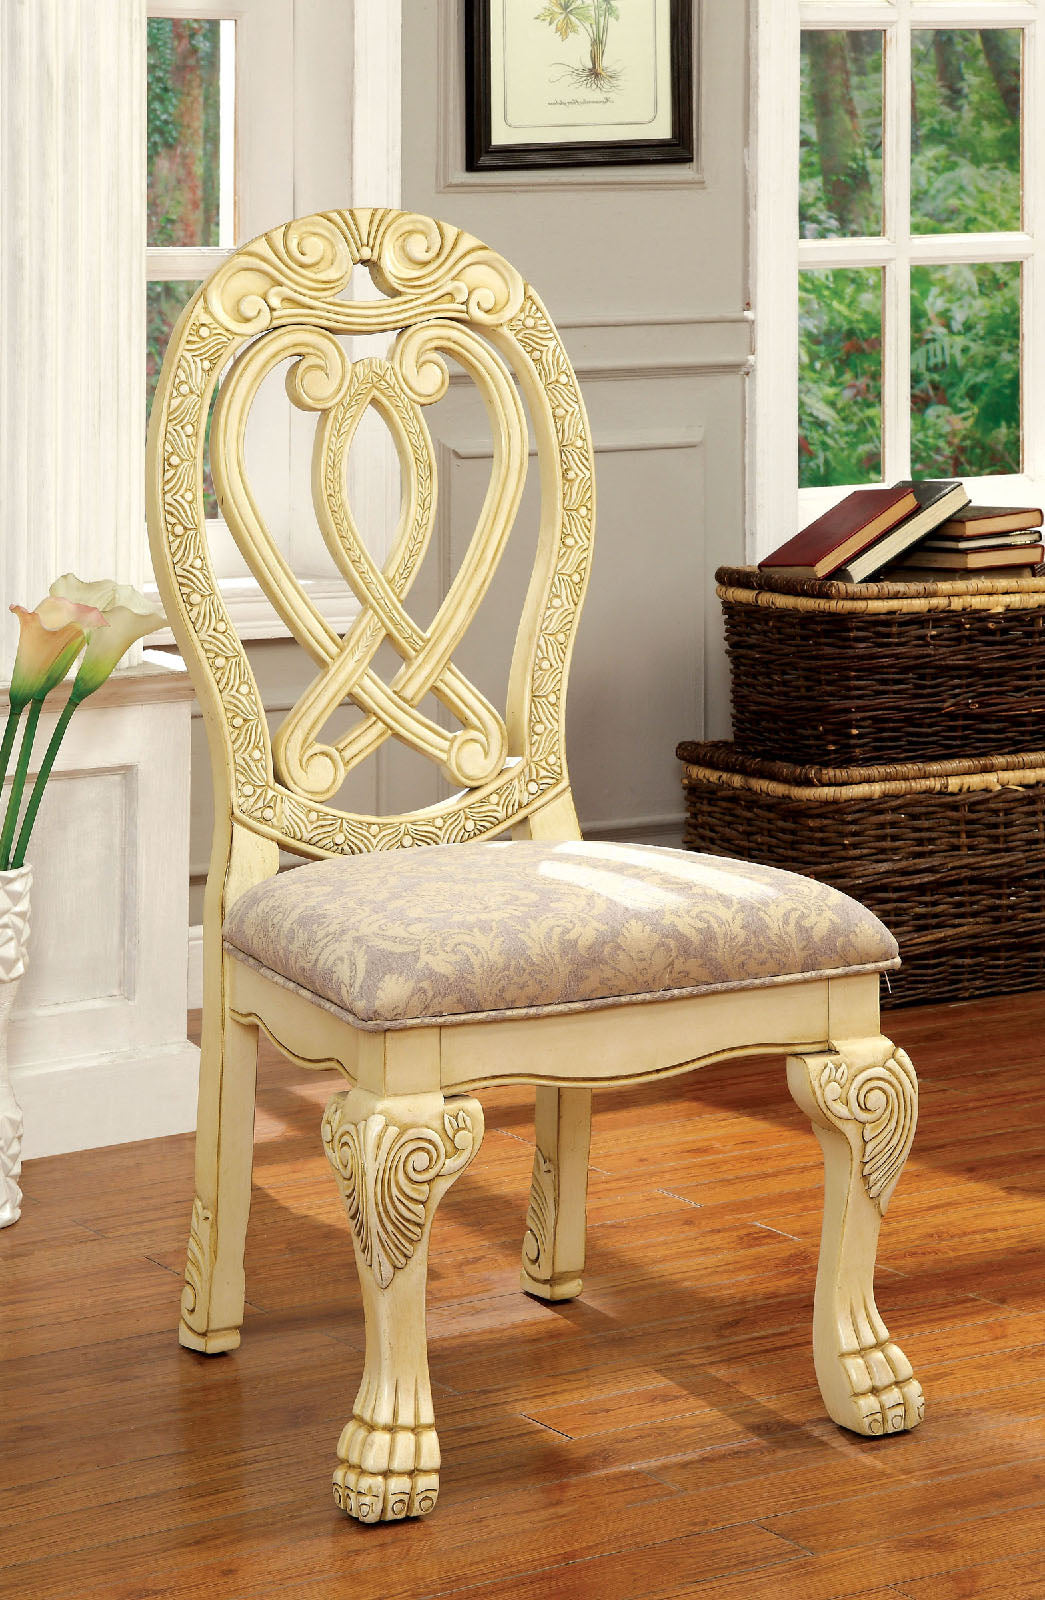 WYNDMERE Vintage White Side Chair (2/CTN)